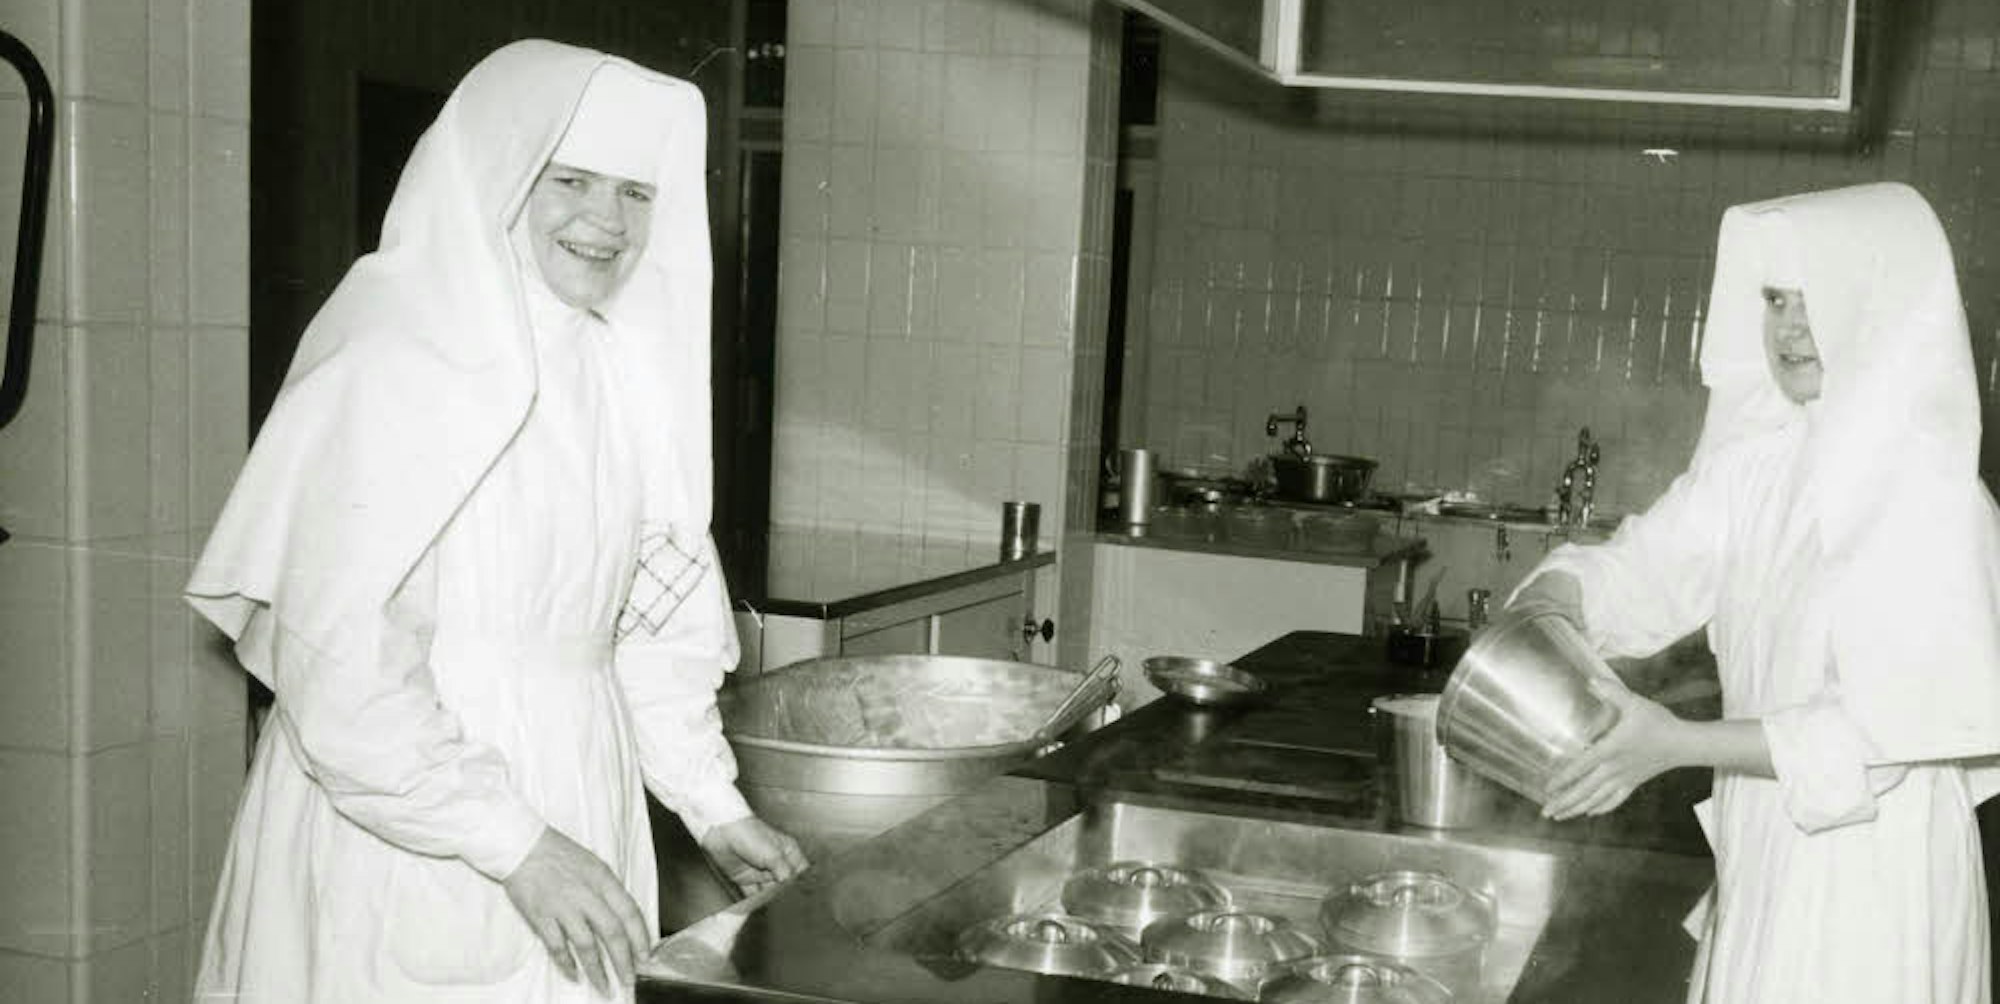 Die Arbeit in der Küche des Bensberger Hospitals gehörte von Anfang an zu den Aufgaben der Pallottinerinnen.